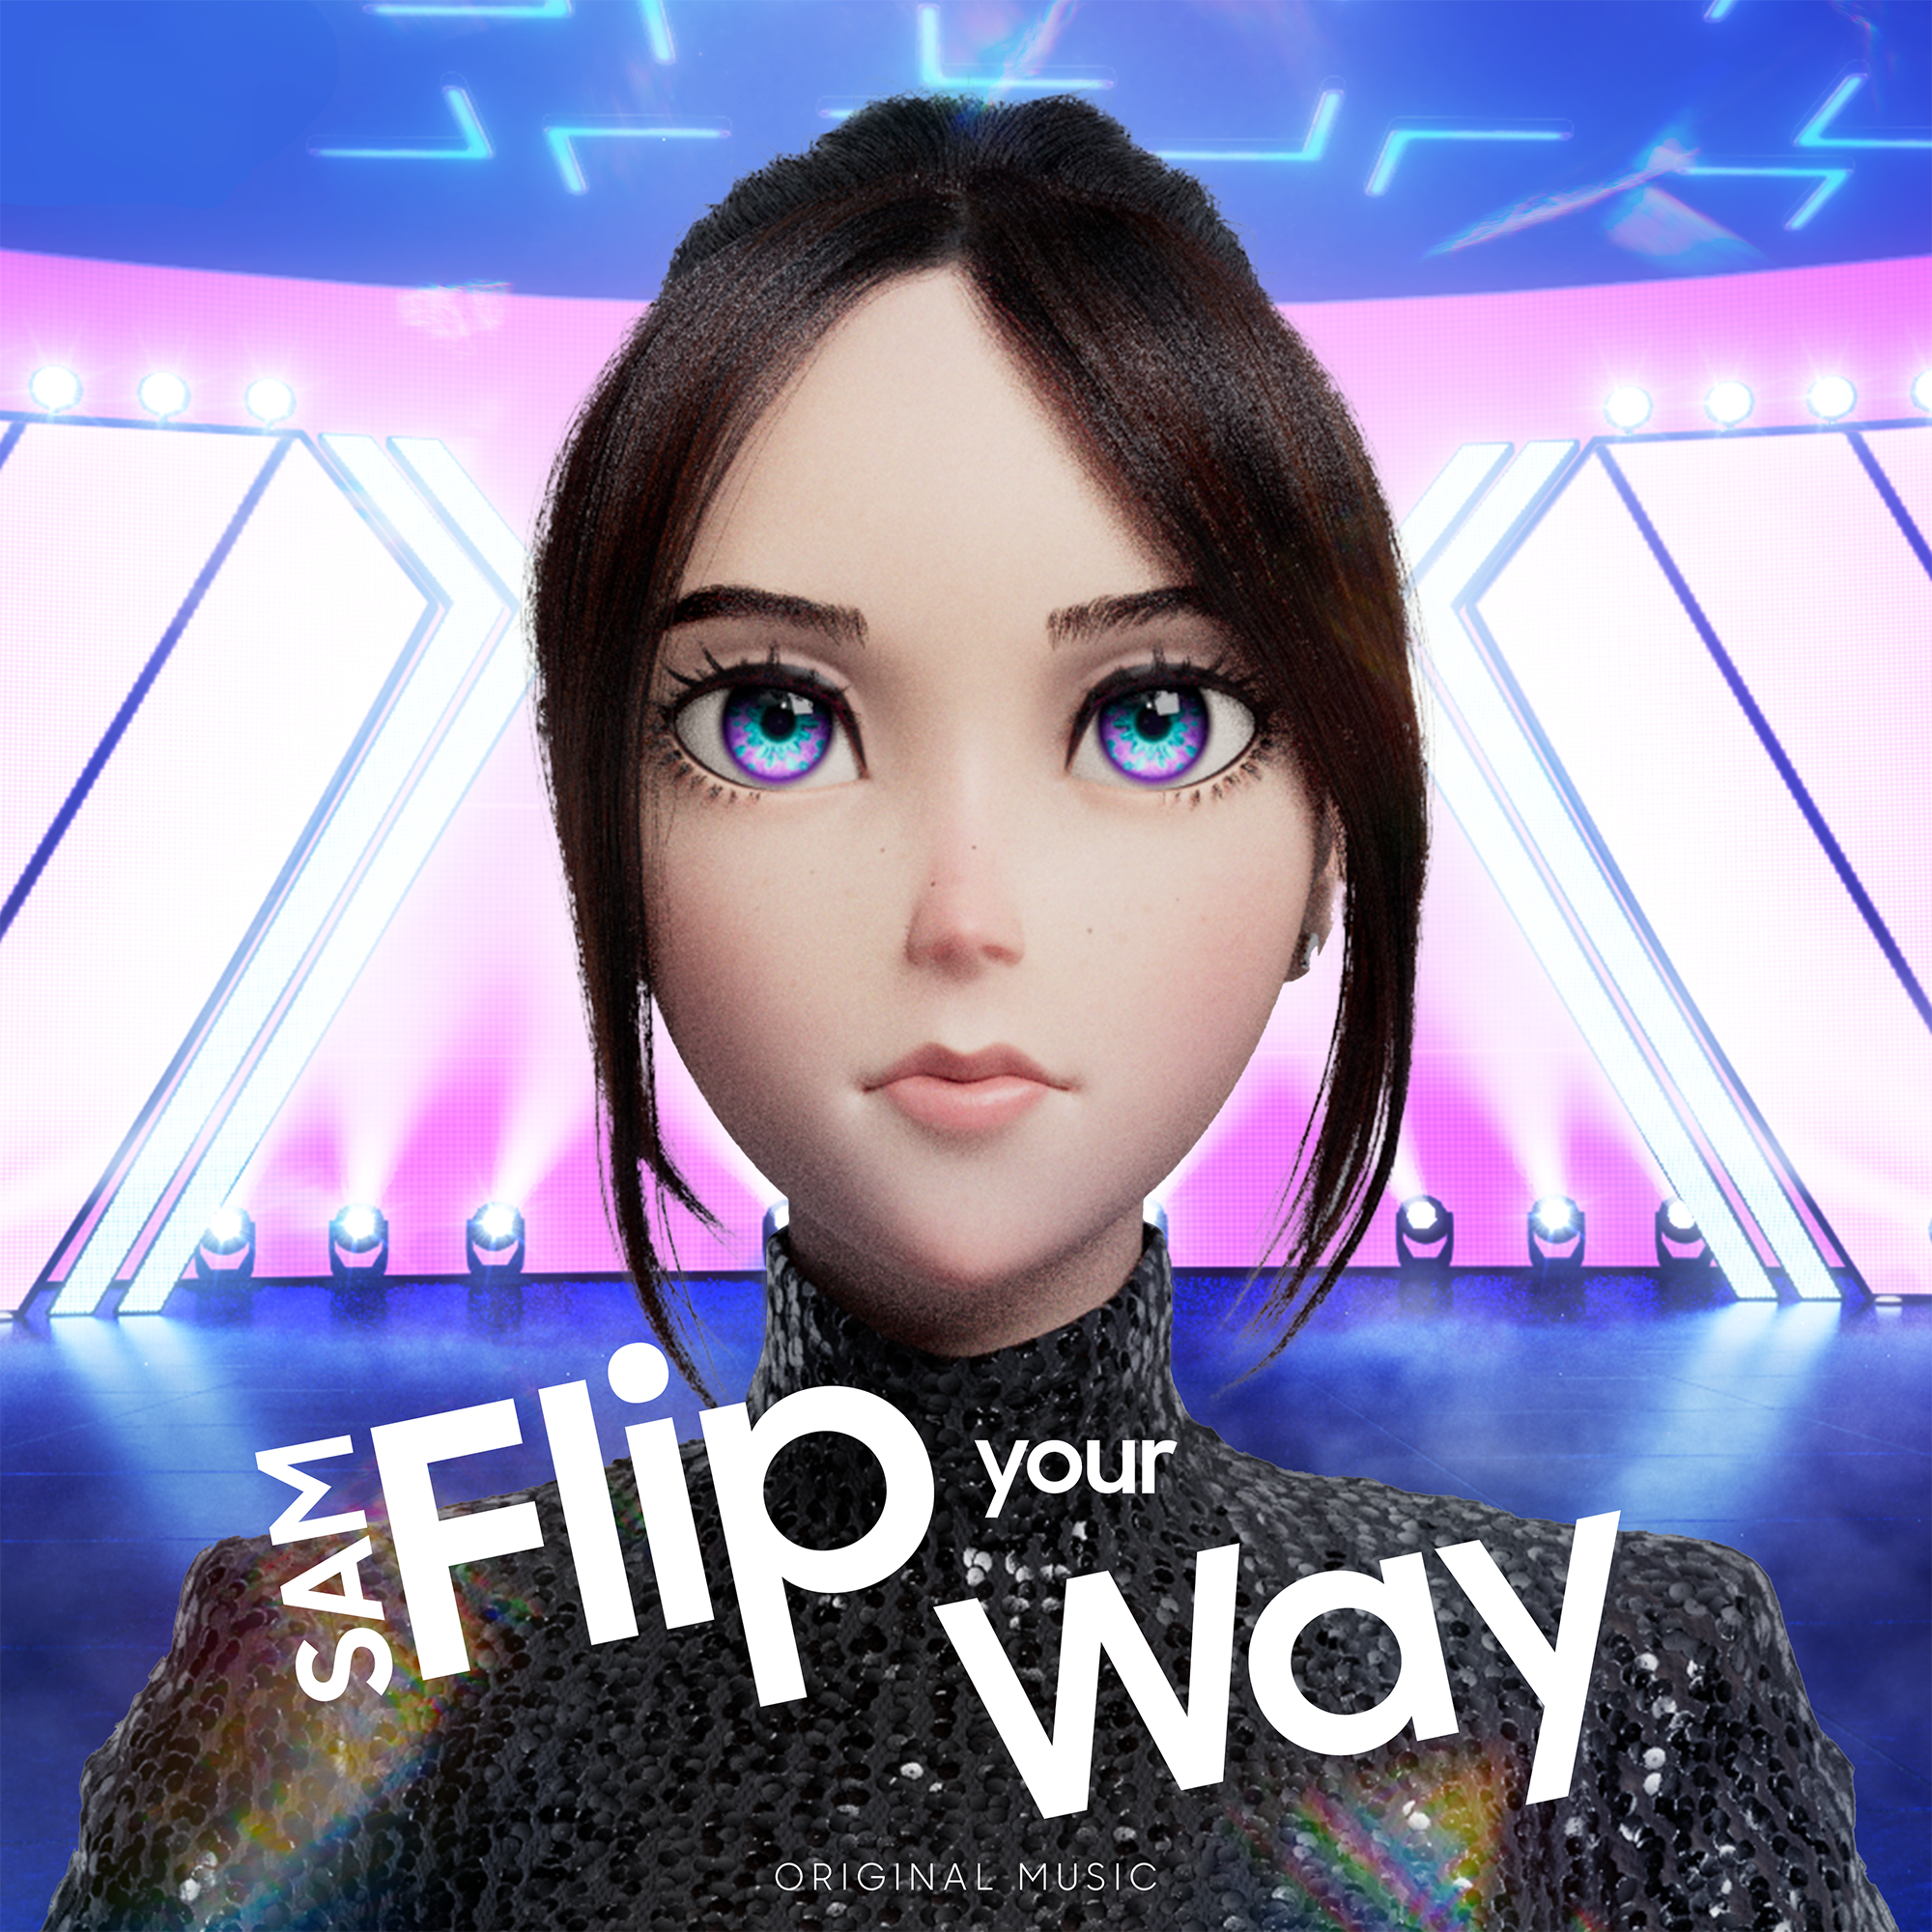 SAM, la influencer digital de Samsung, debuta como cantante en un video musical y lanza “Flip Your Way”, una canción que refuerza las infinitas posibilidades de la tecnología